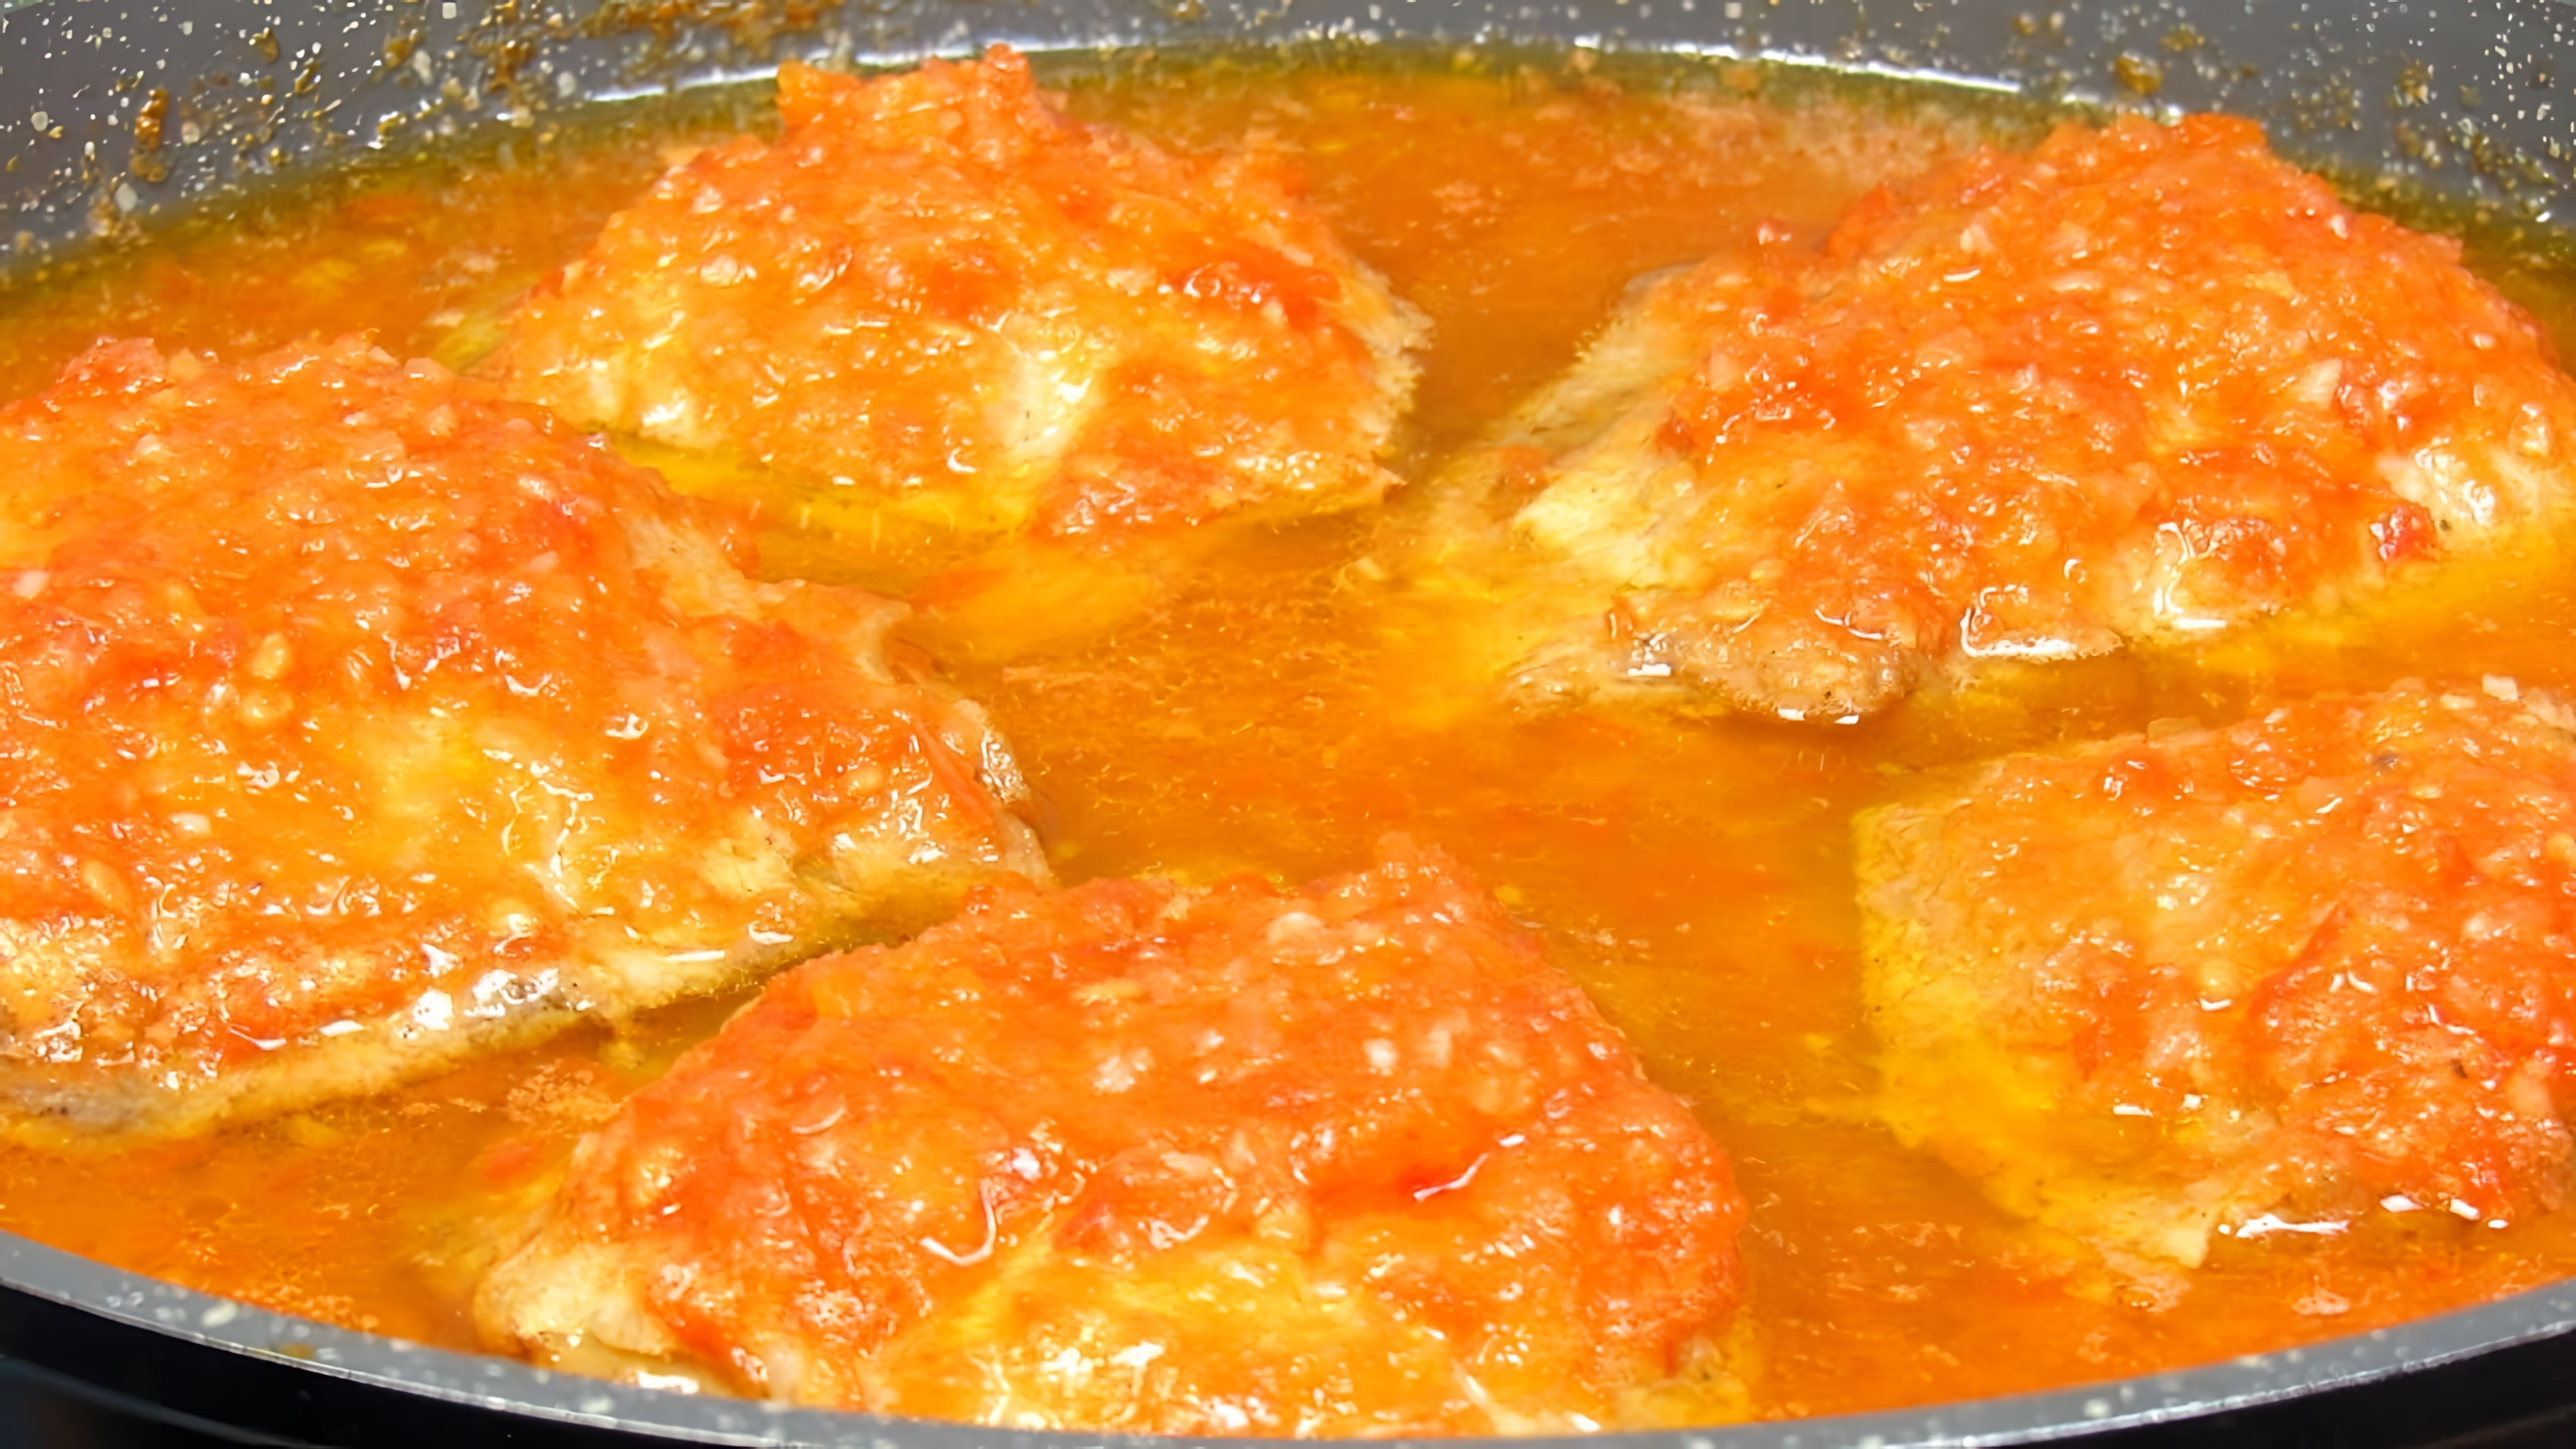 В этом видео демонстрируется рецепт приготовления куриных бедер в томатном соусе на сковороде